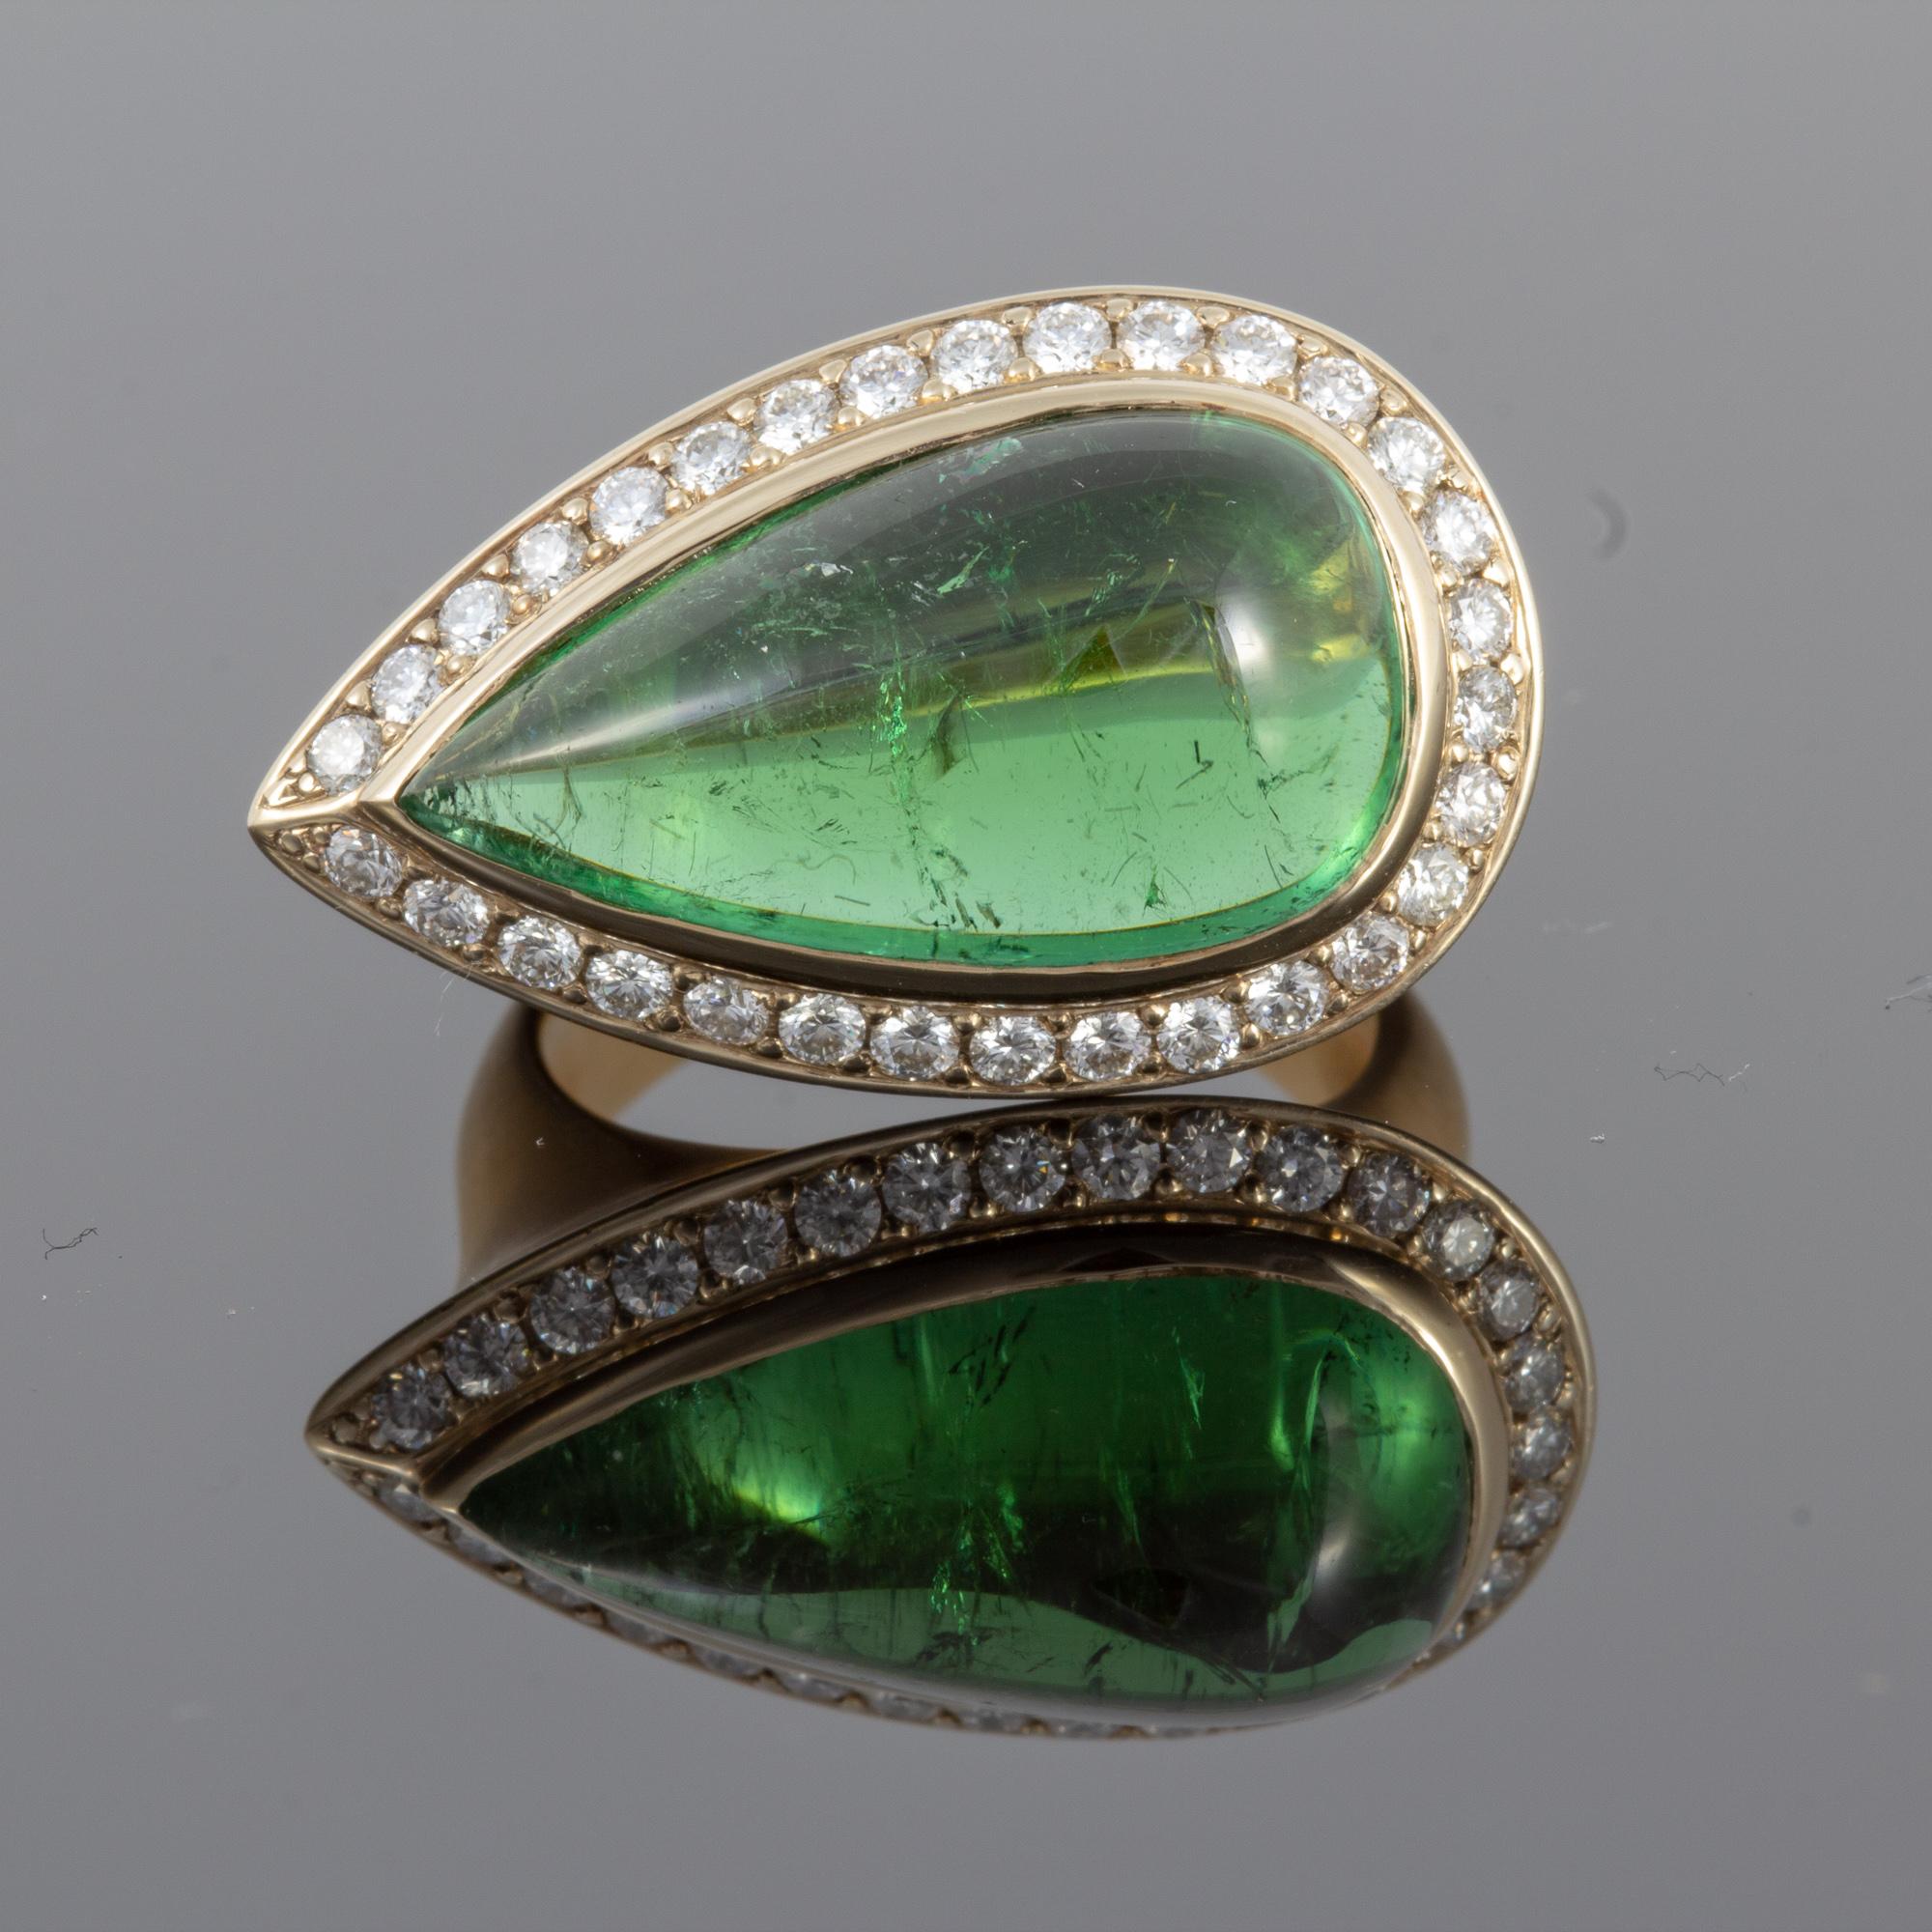 Exquisite 12.4 carat Green Tourmaline Cabochon Ring set in 18 karat Gold 1